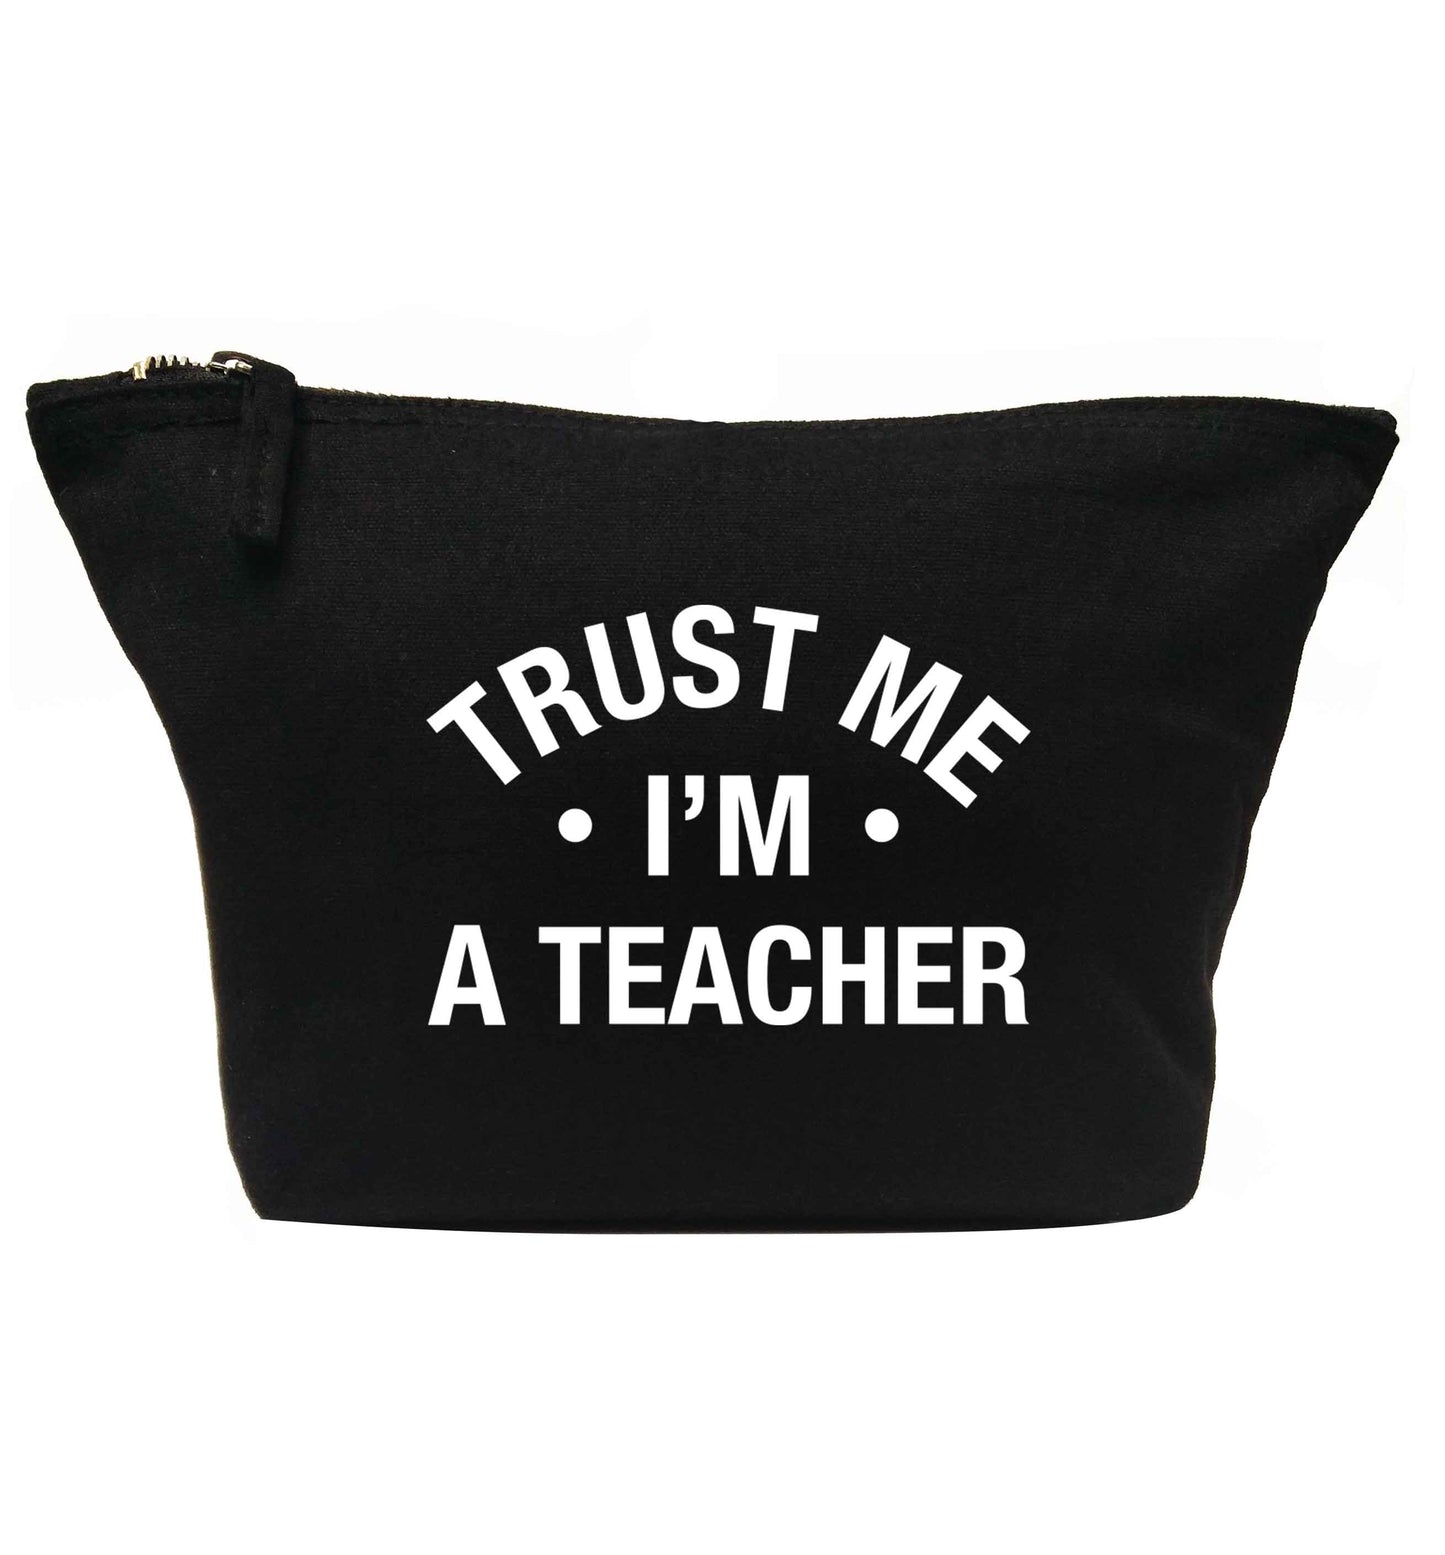 Trust me I'm a teacher | Makeup / wash bag